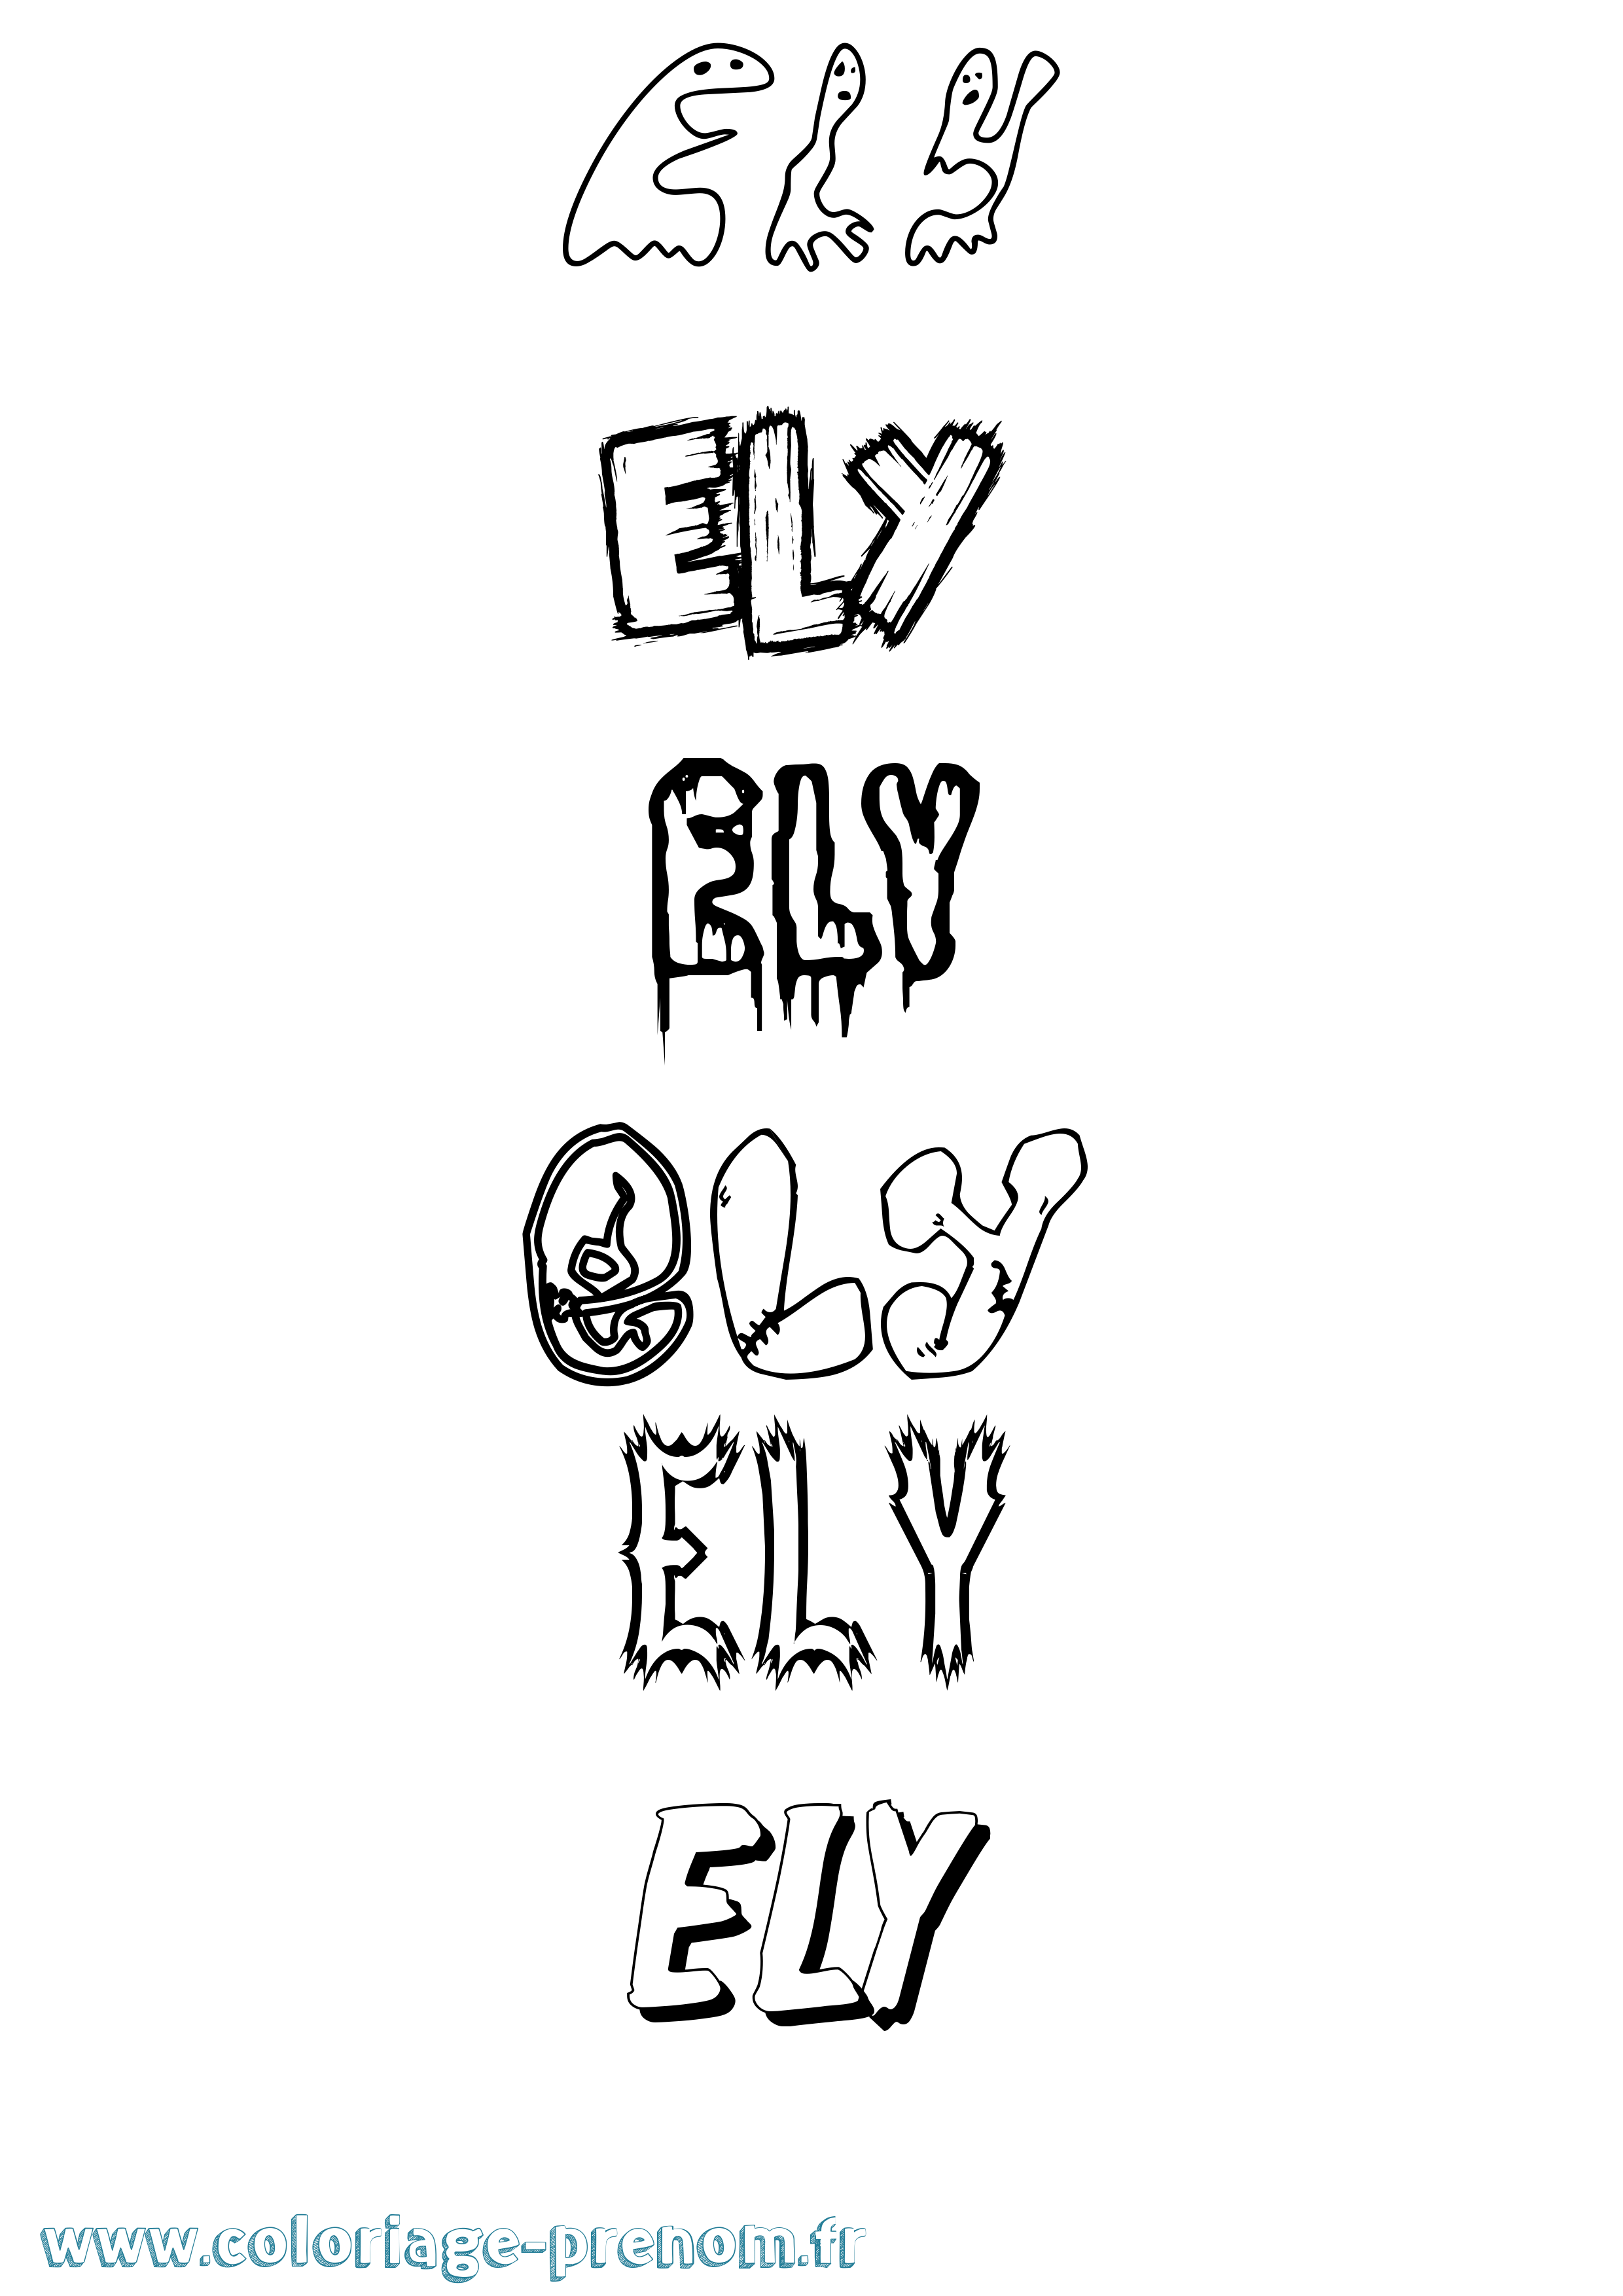 Coloriage prénom Ely Frisson